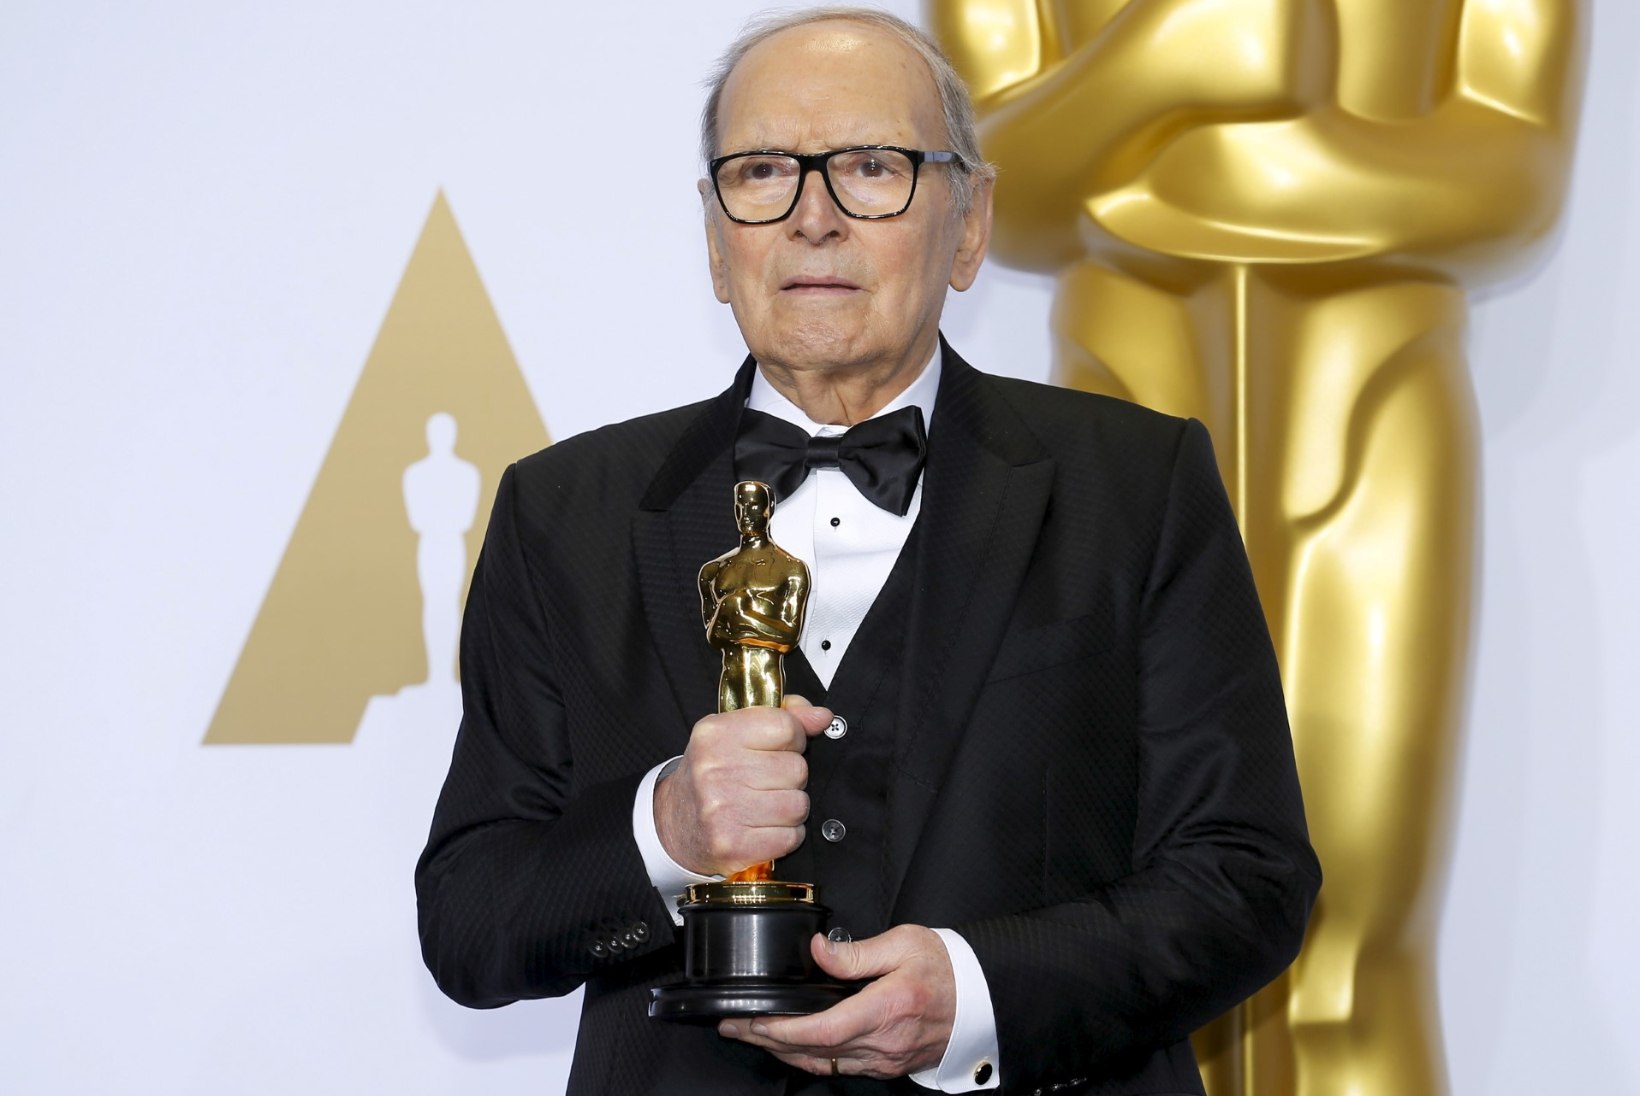 Suri Oscari-võitjast filmihelilooja Ennio Morricone